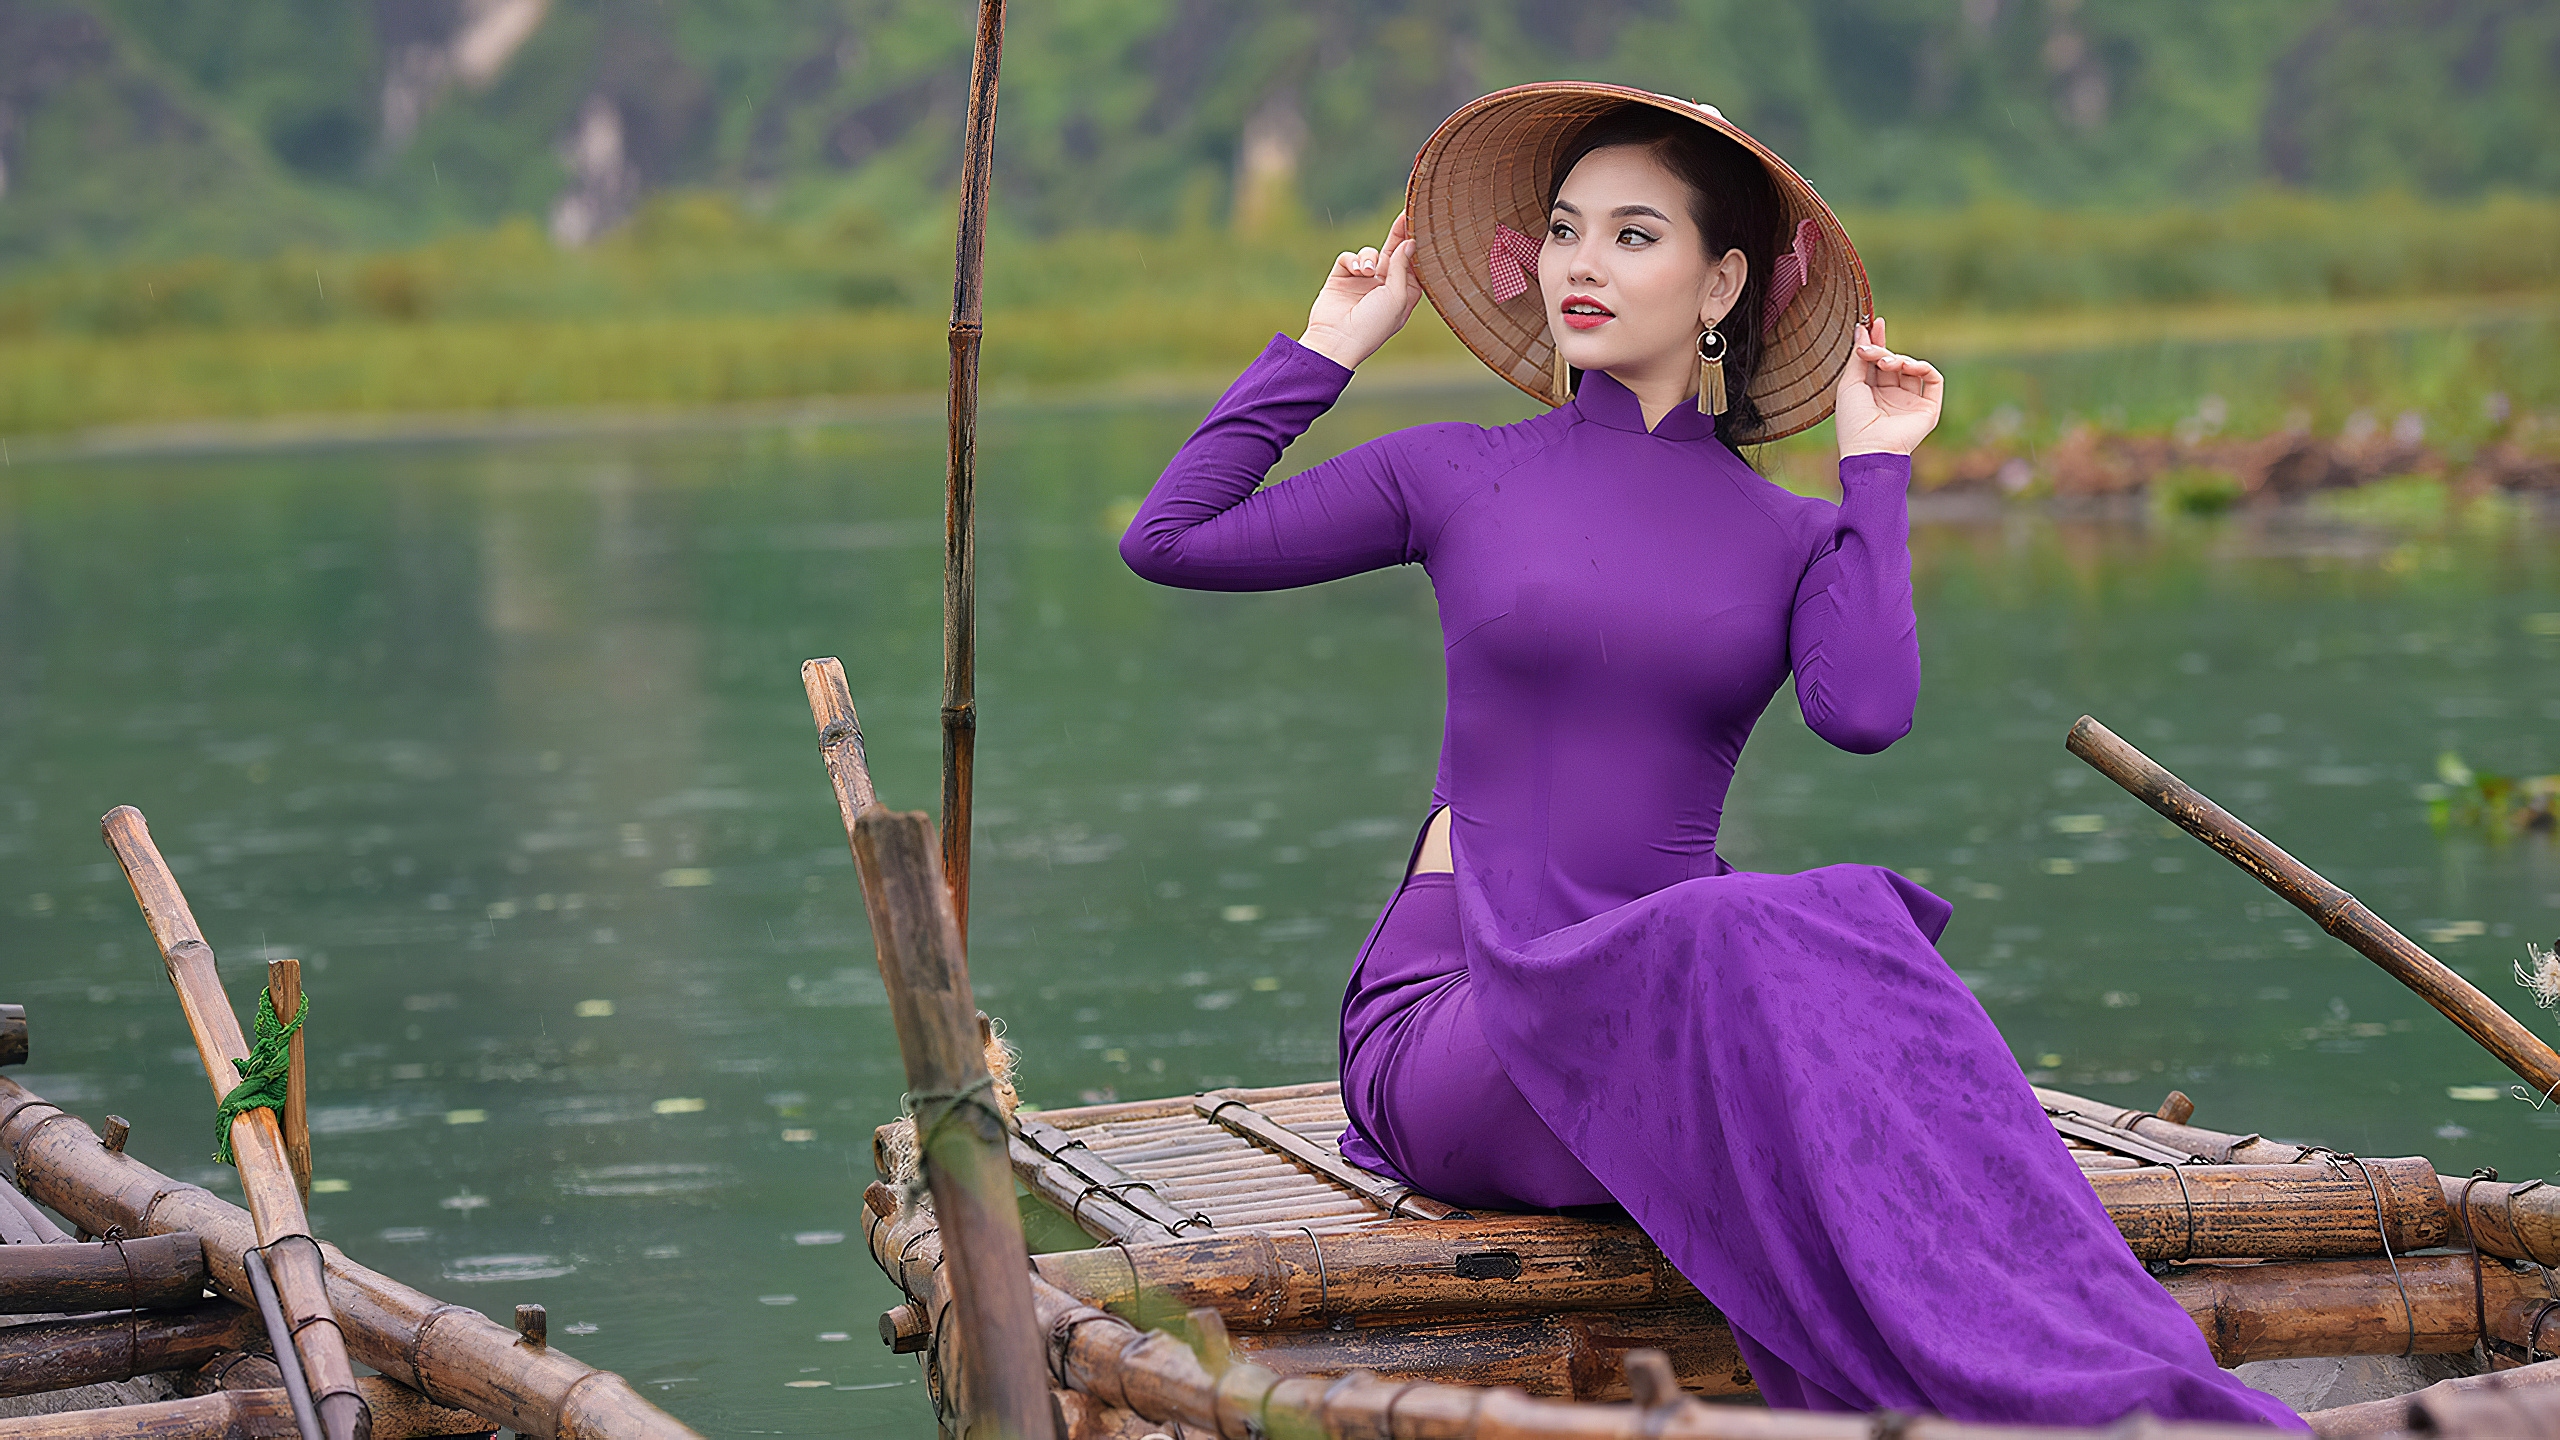 Девушка азиатка в национальной шляпе и в сиреневом платье сидит в лодке на фоне водоема и природы